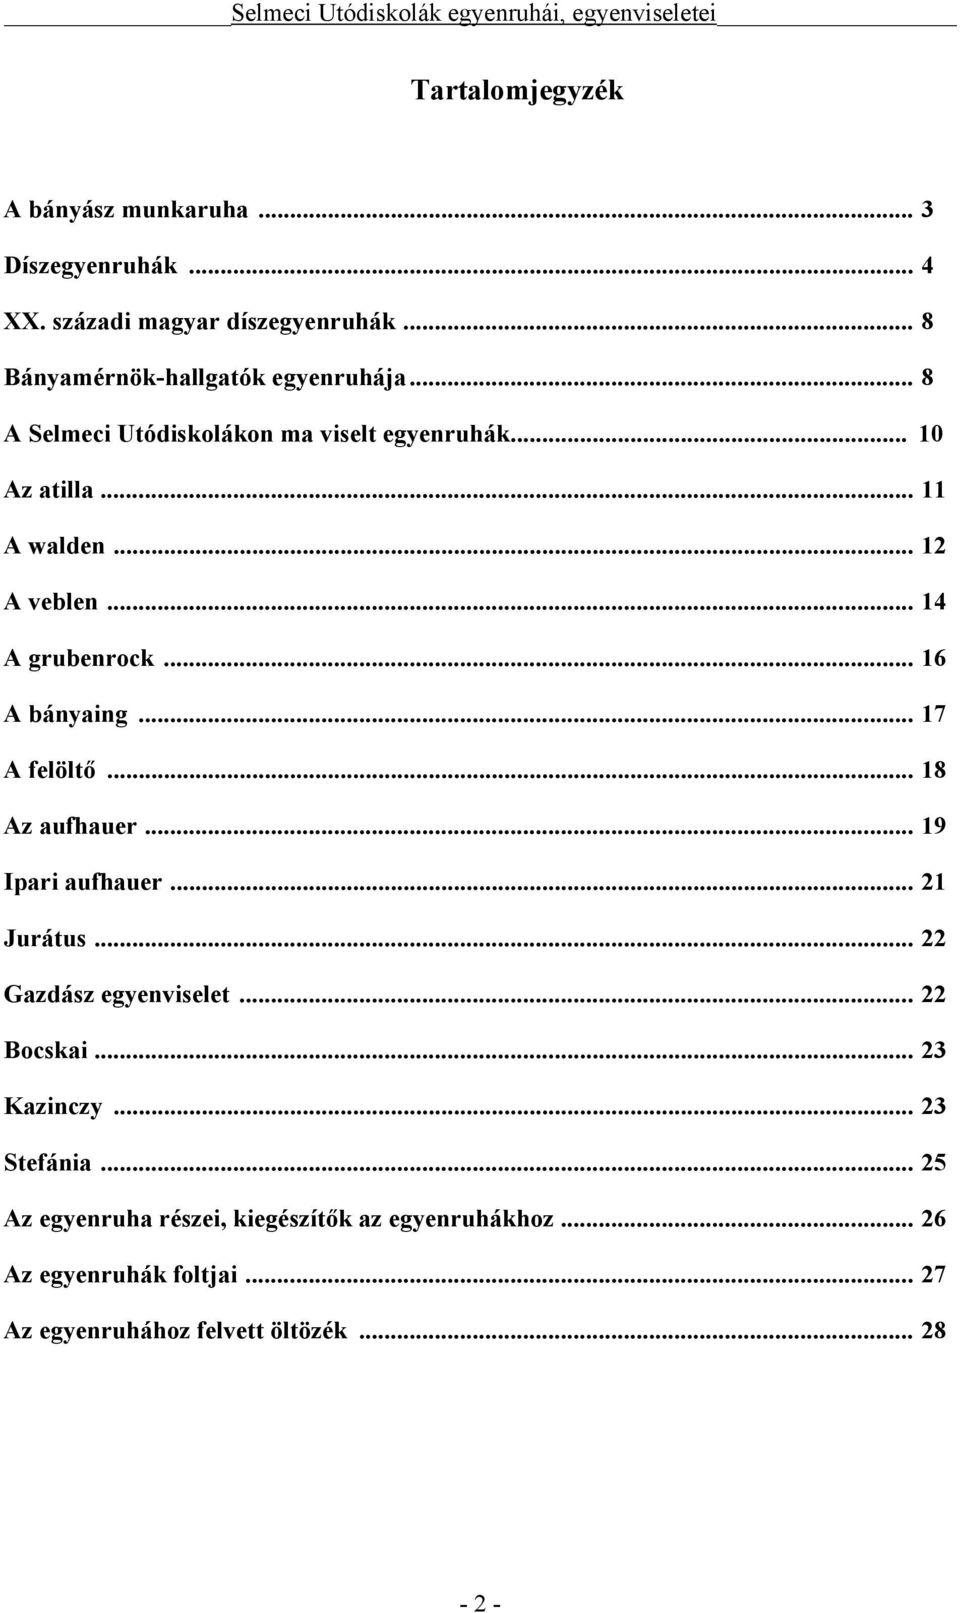 Selmeci Utódiskolák egyenruhái, egyenviseletei - PDF Free Download